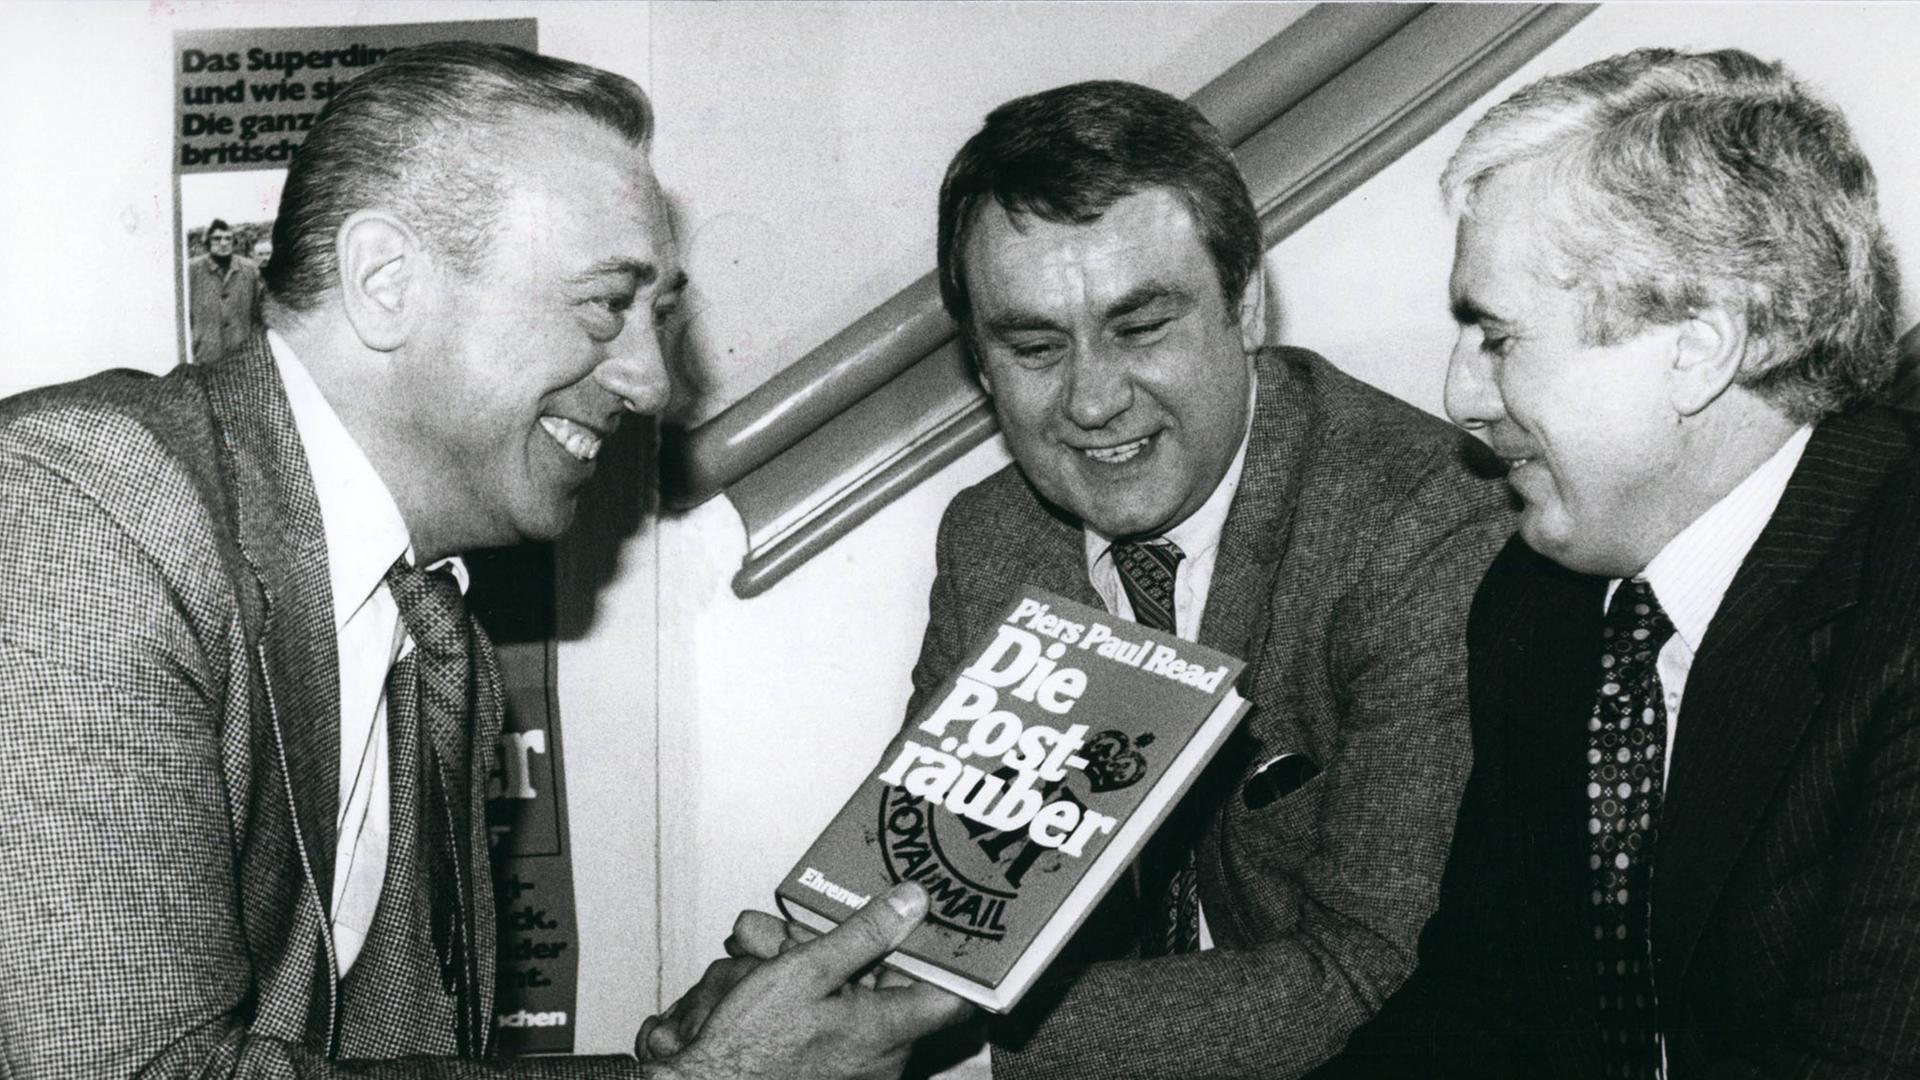 Horst Tappert (l.) spielt den "Major" Michael Donegan. Hier mit den Posträubern Jim Hussey und Buster Edwards (r.) im Jahre 1963.